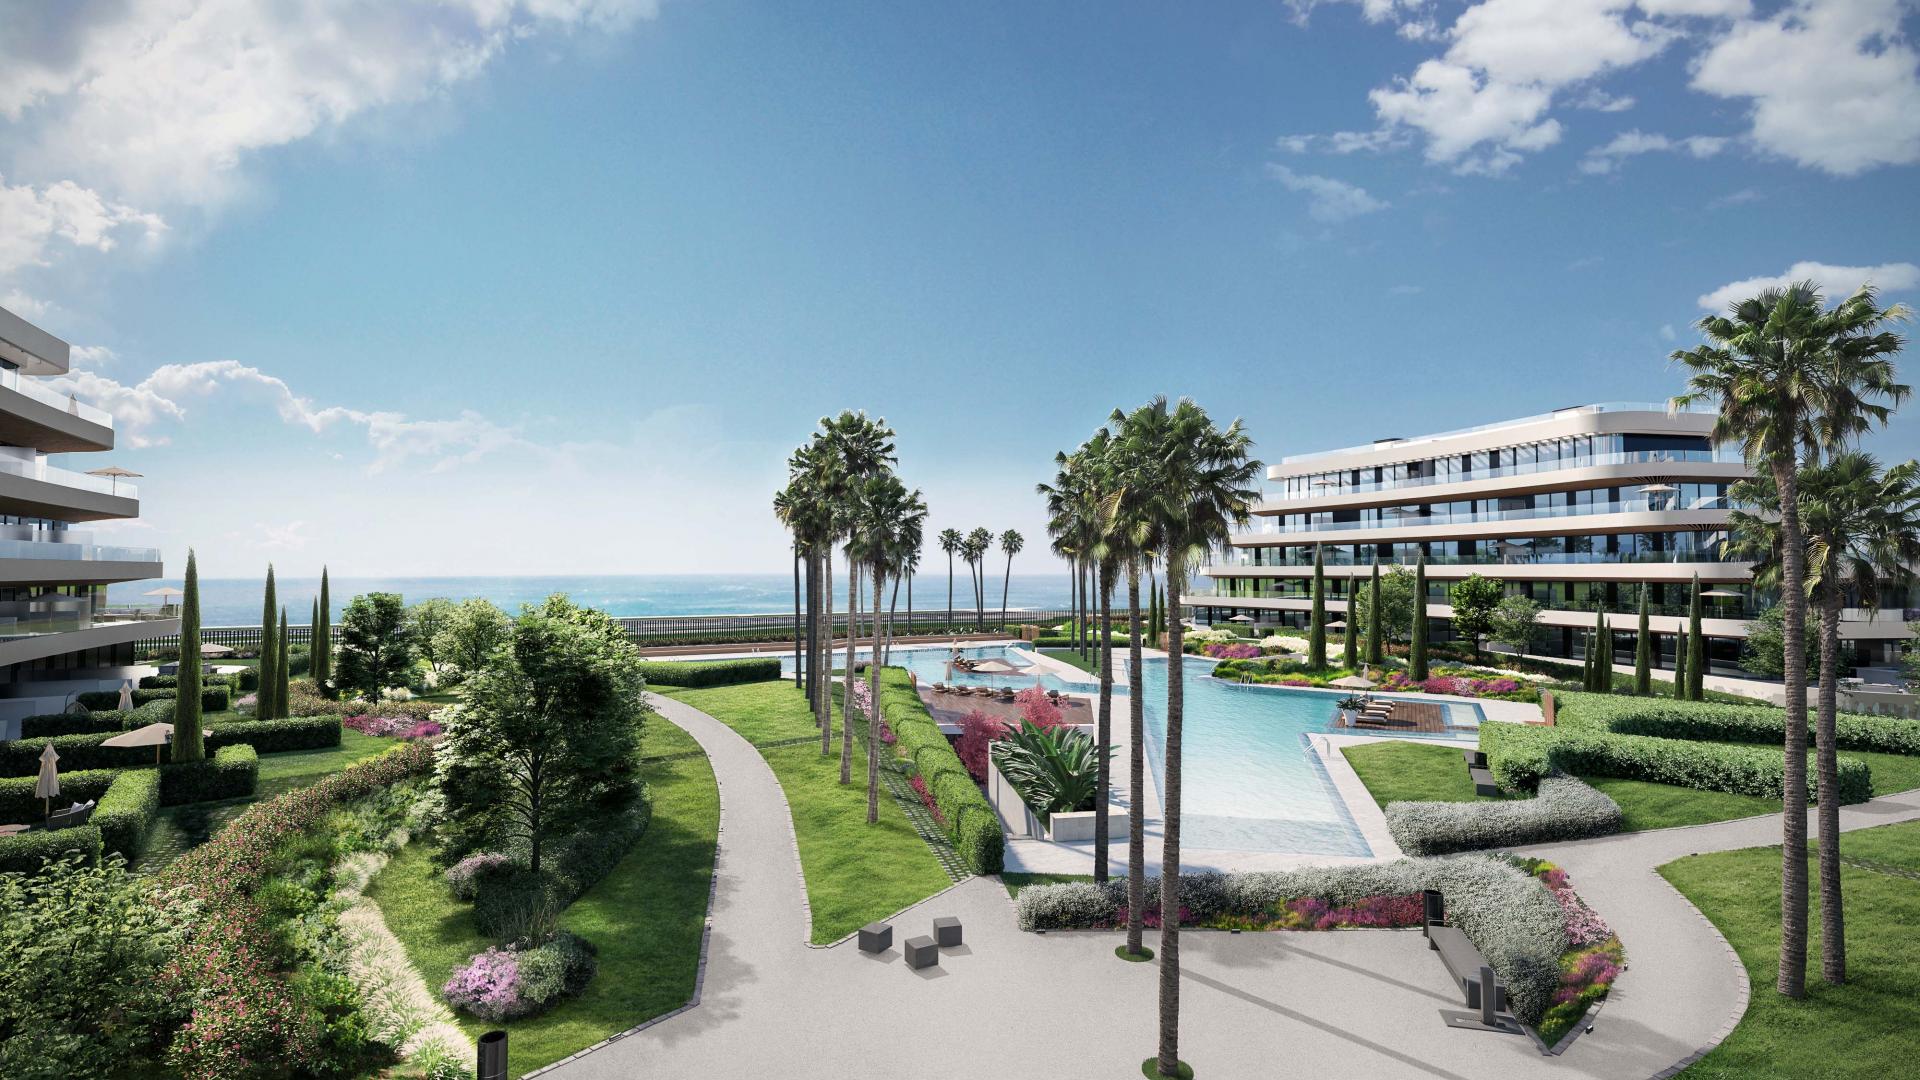 104 apartamentos de 1 a 4 dormitorios ubicados en primera línea de playa. Atan solo 800 metros del Parador Málaga Golf y a poco más de 10 minutos delcorazón de Málaga capital.